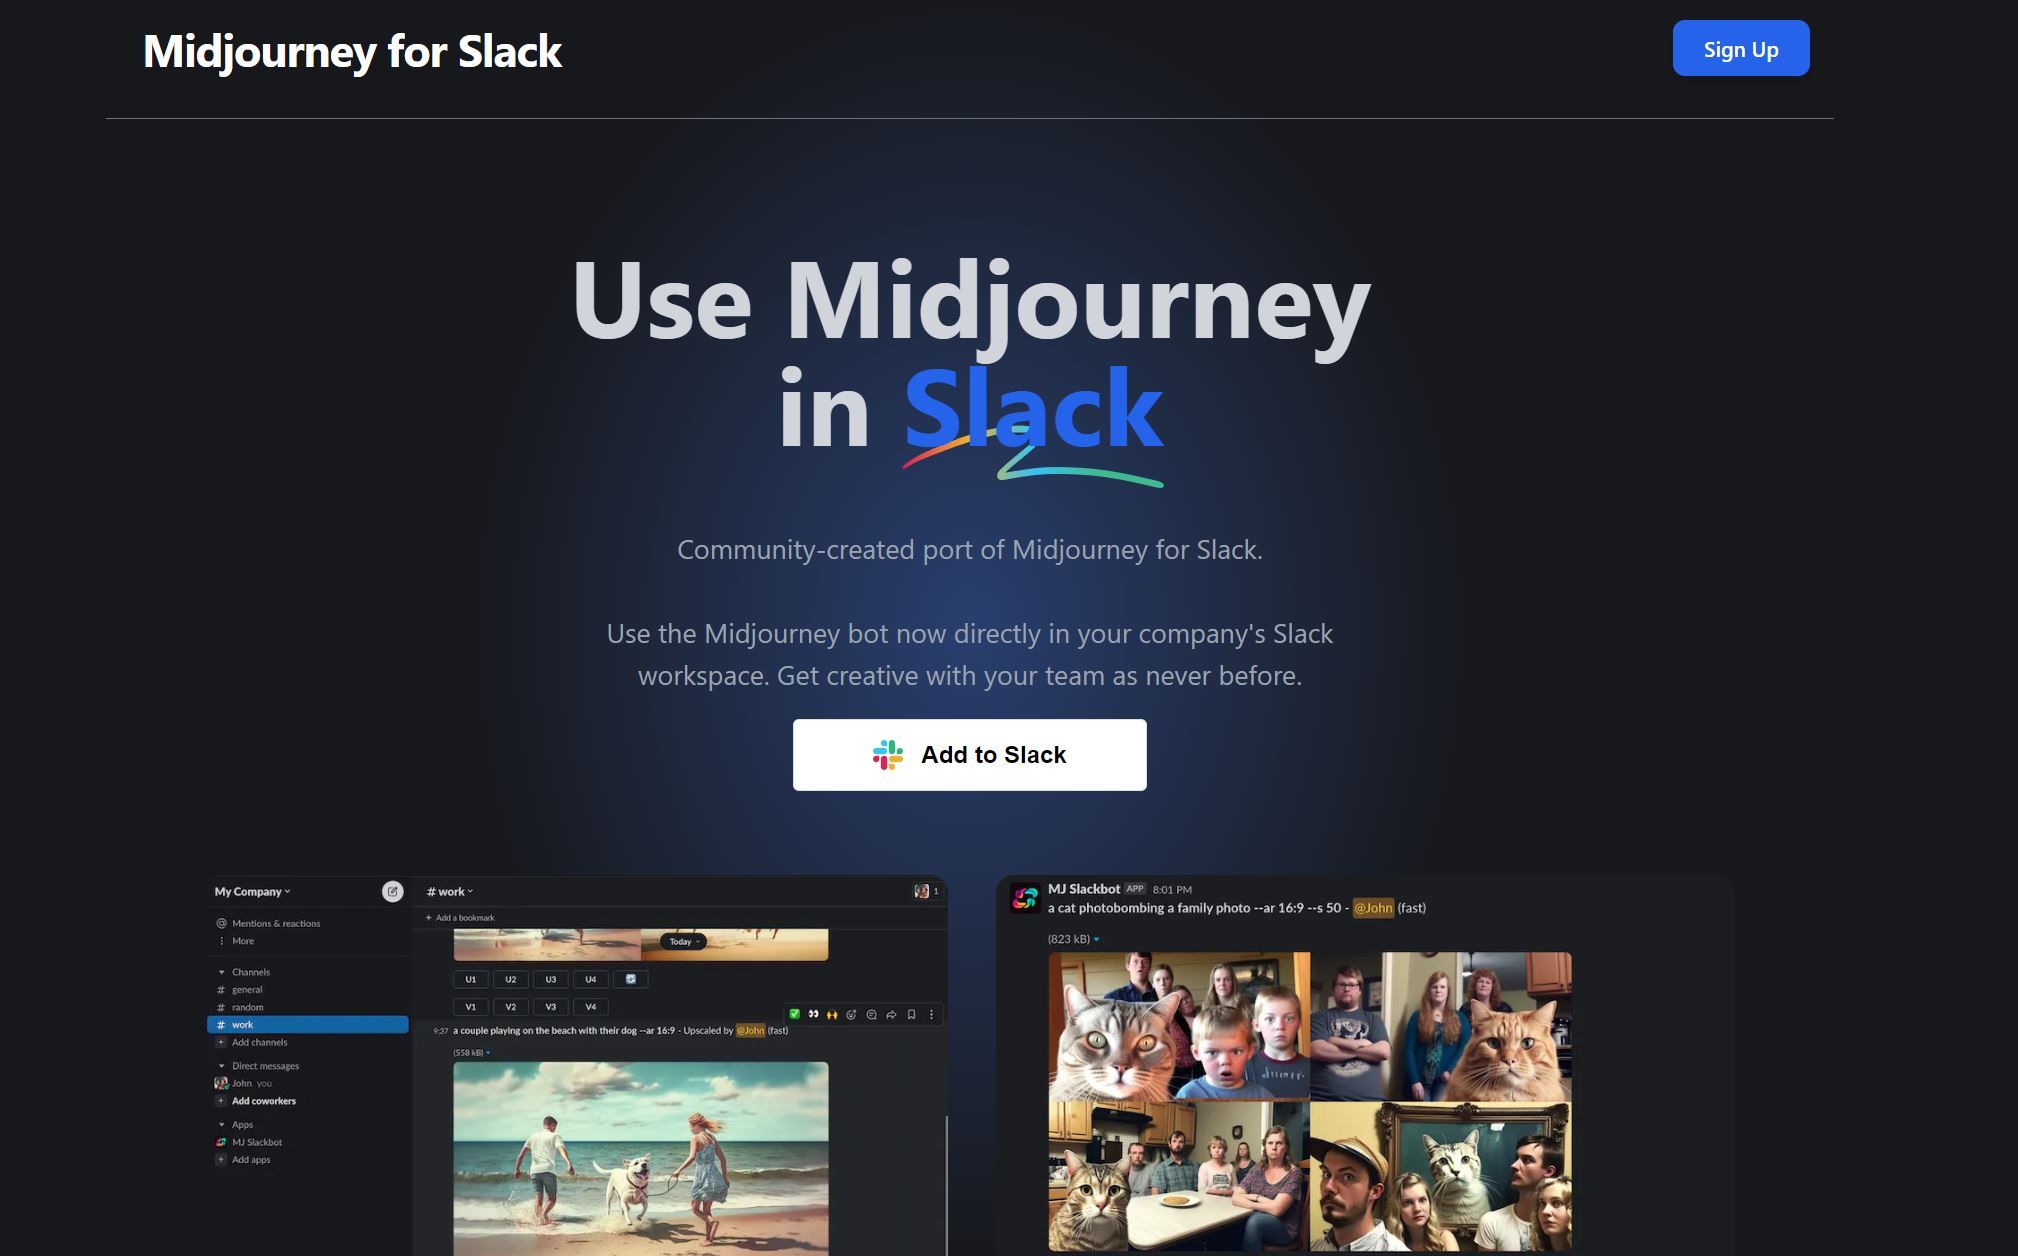 Post: Midjourney for Slack